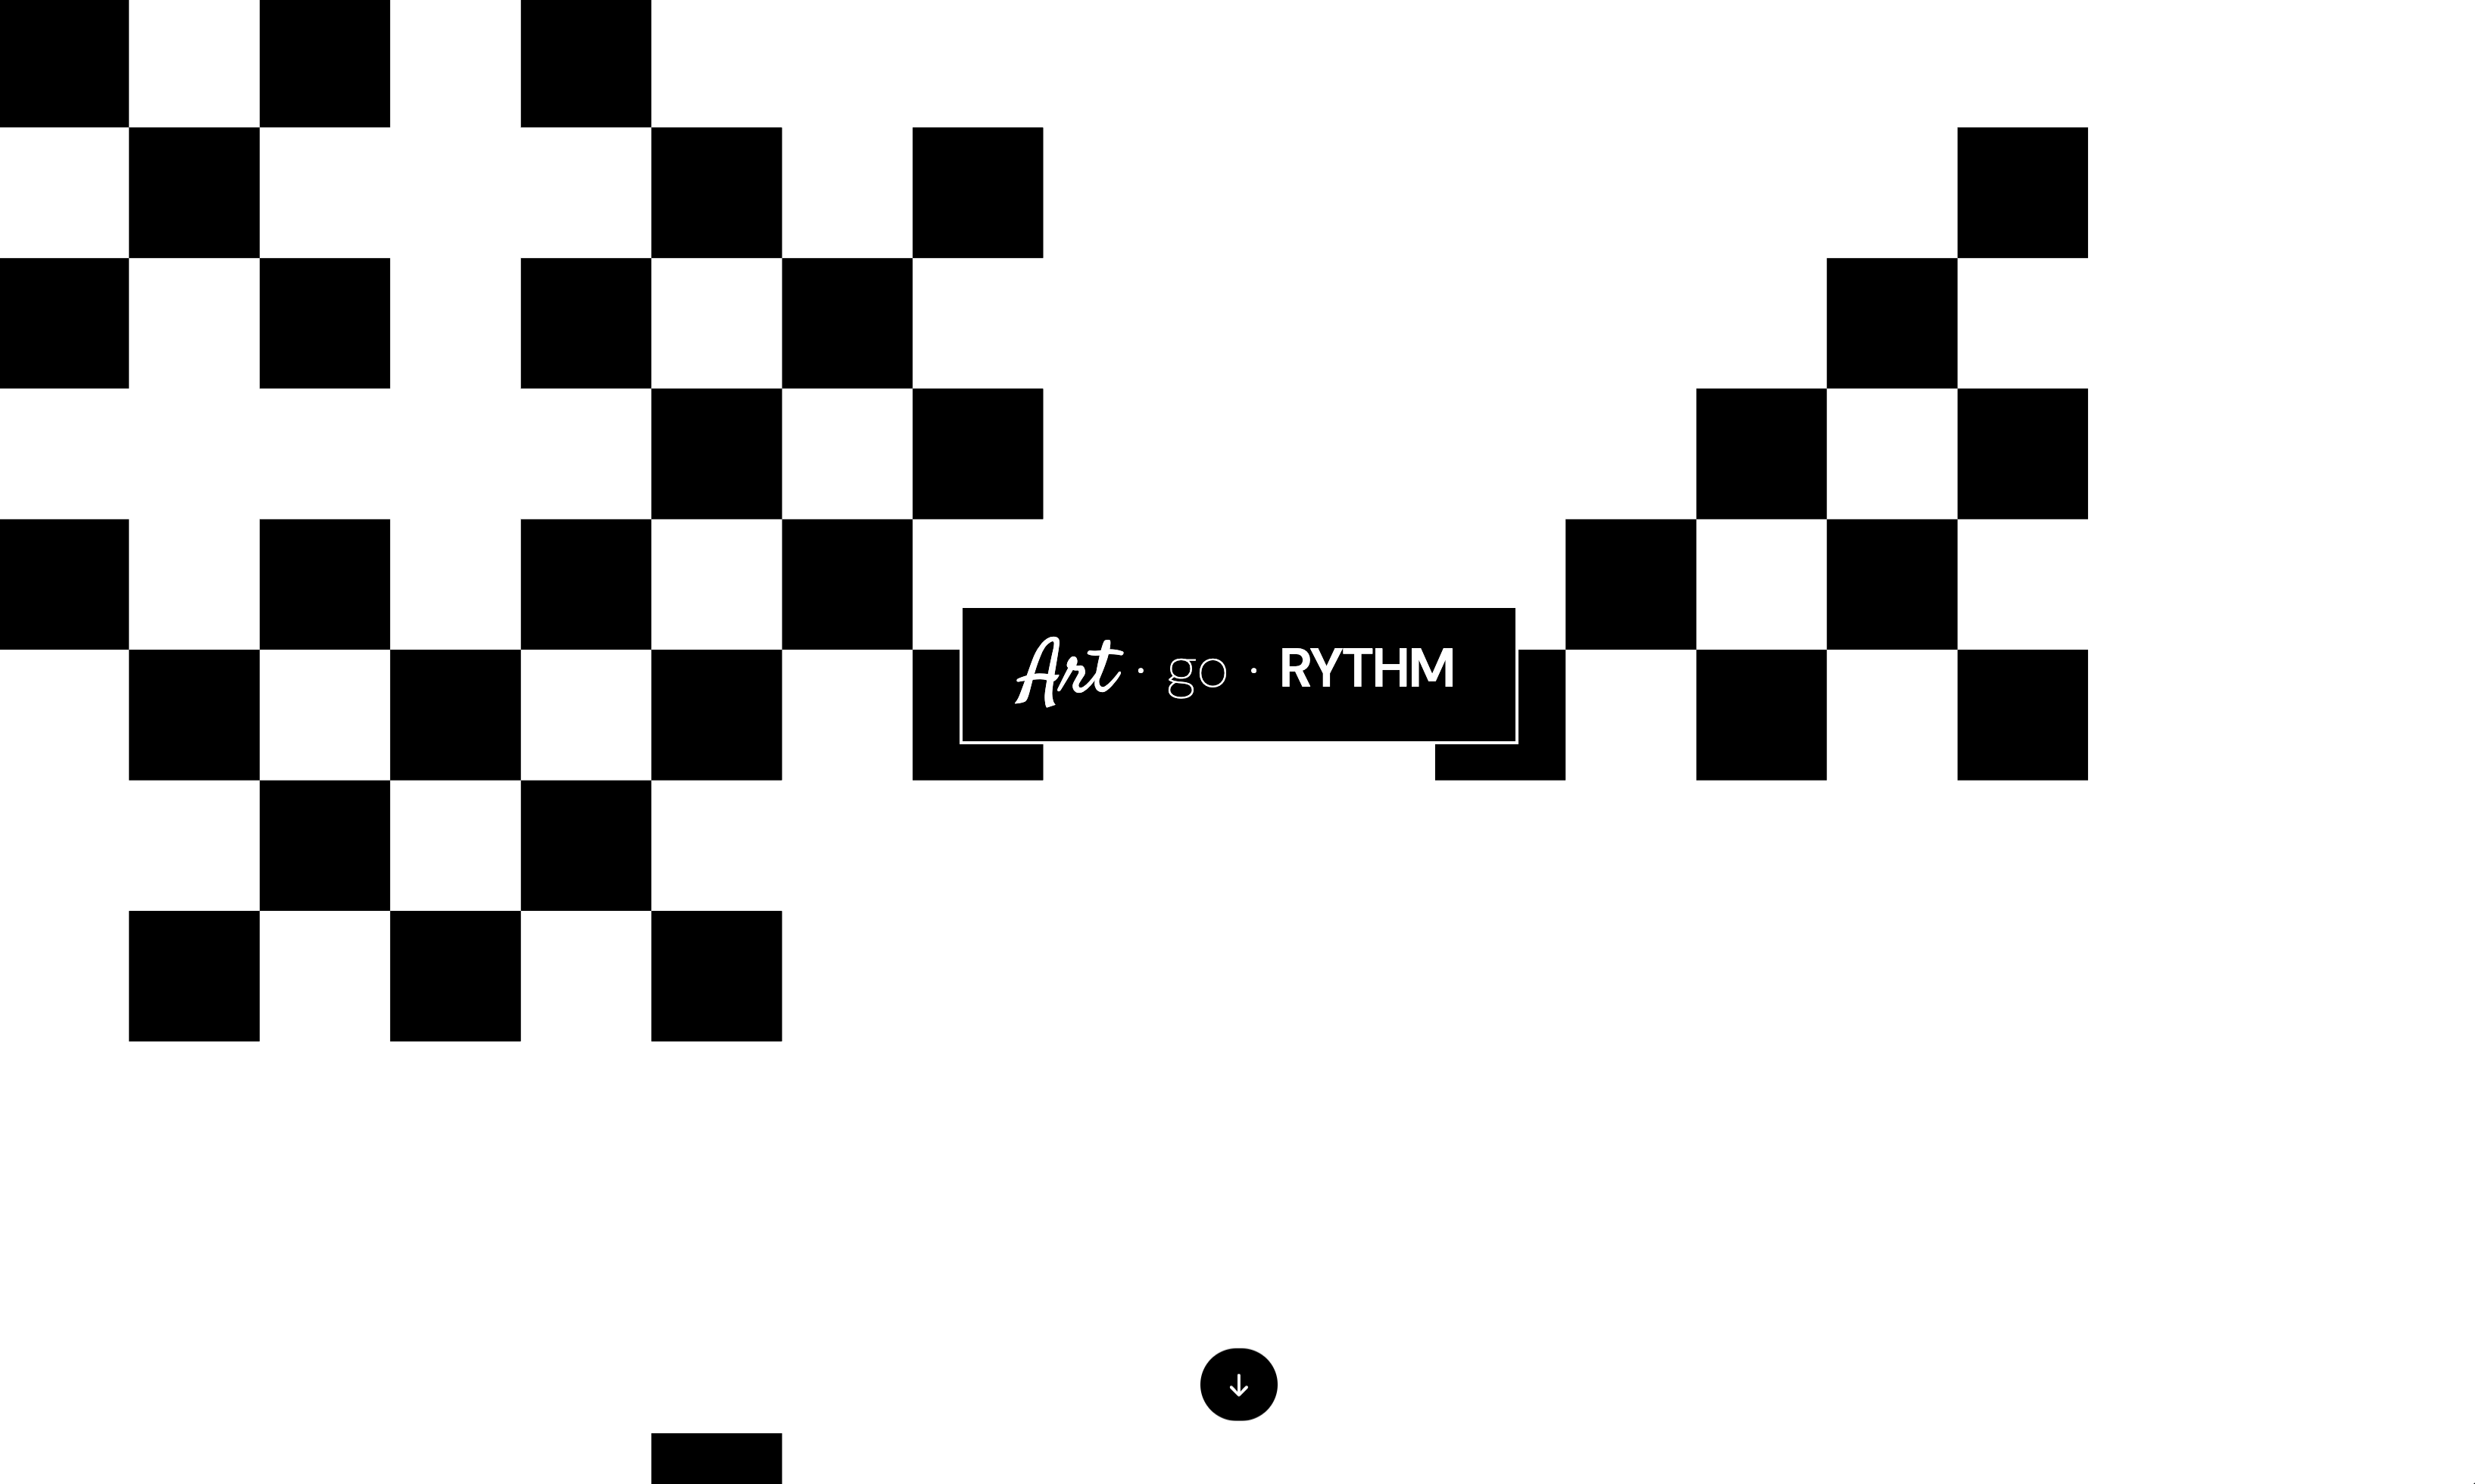 Art-go-rythm